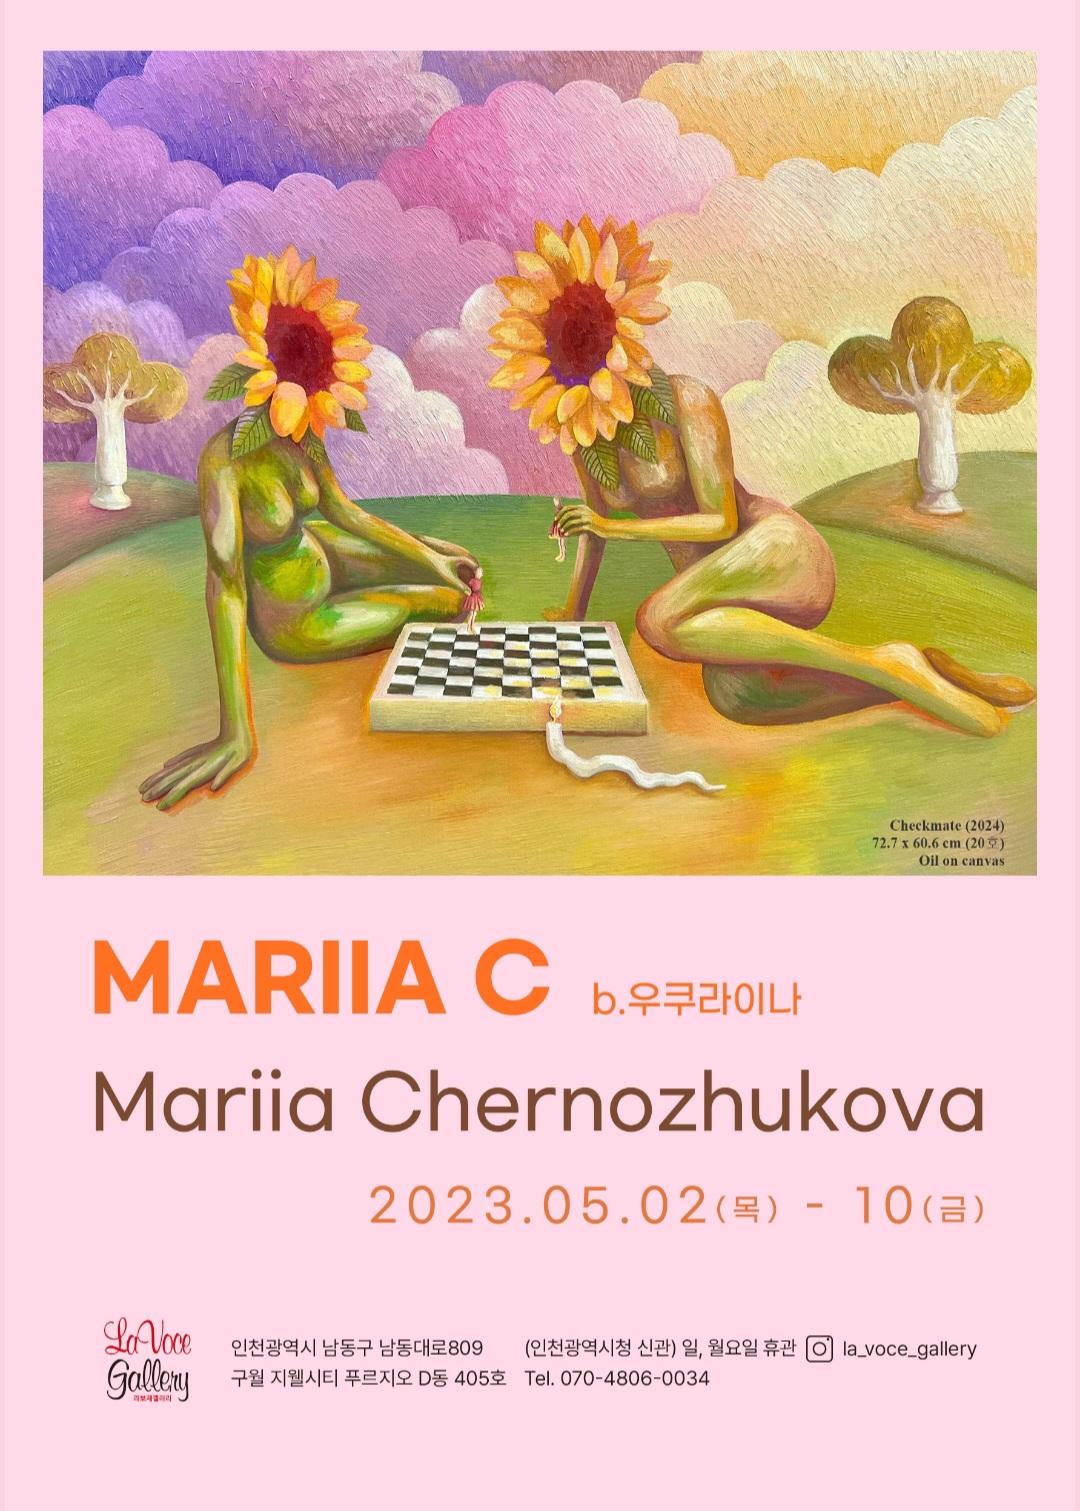 MARIIA C - Mariia Chernozhukova 포스터 이미지